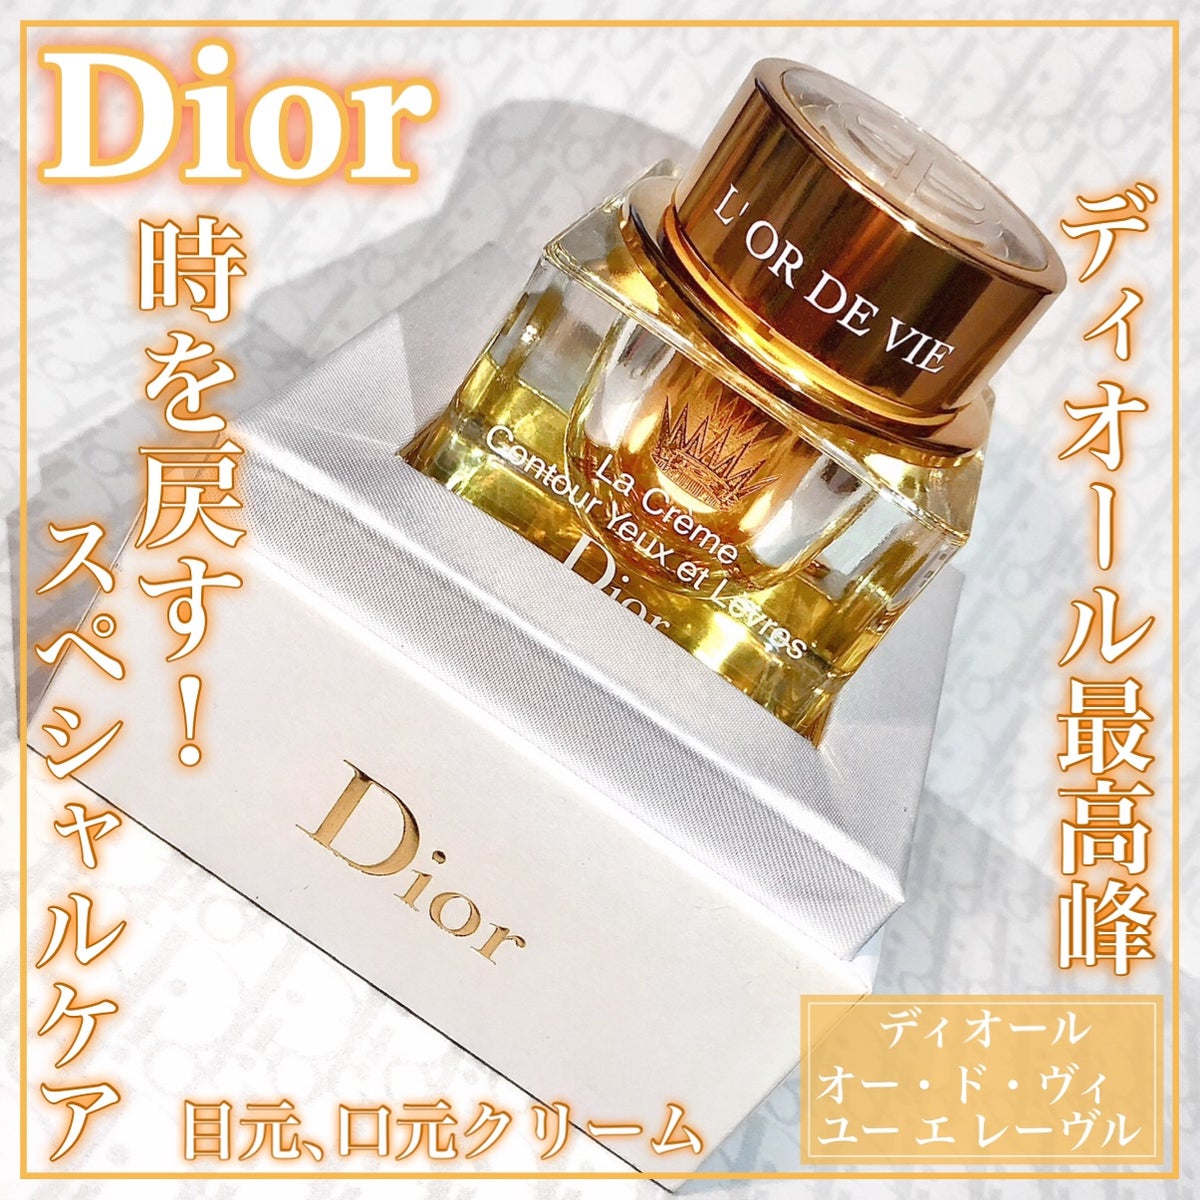 試してみた】オー・ド・ヴィ ユー エ レーヴル / Diorの効果・肌質別の